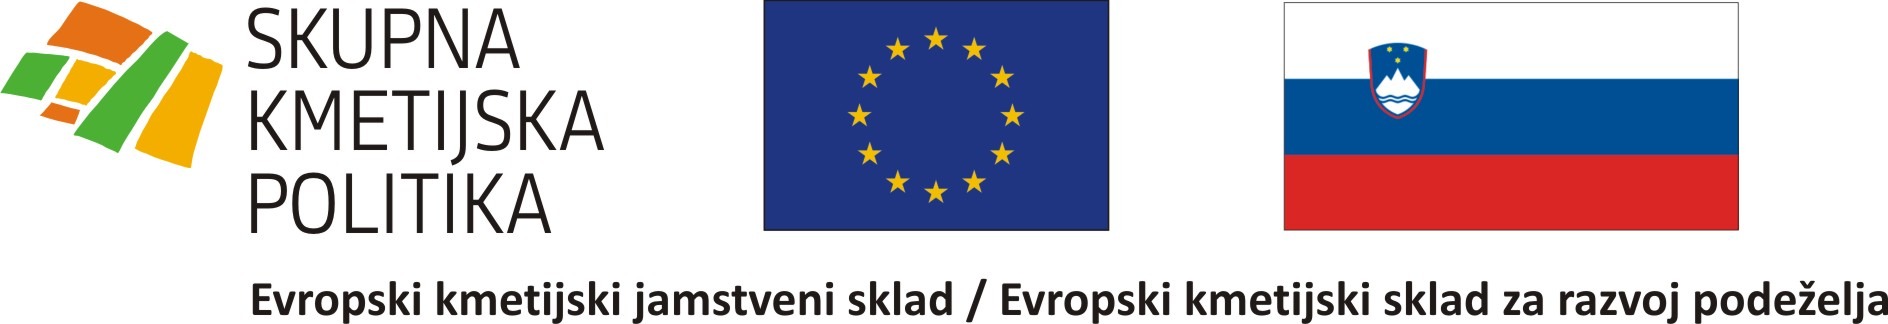 Logotip vkljucen v shemo EU in SLO zastave